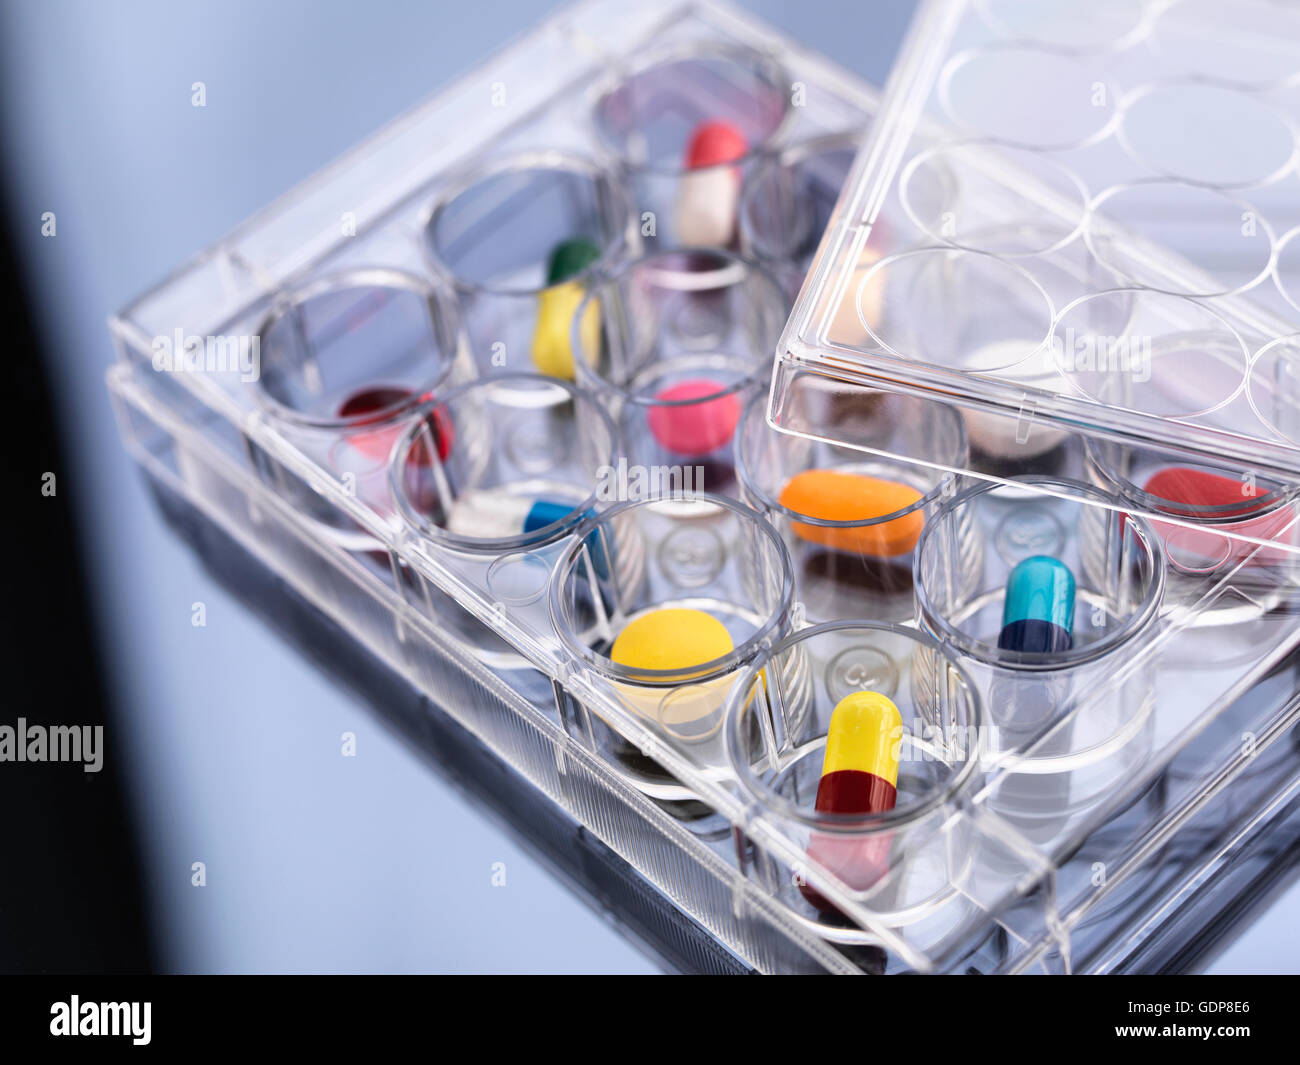 La recherche pharmaceutique, variété de médicaments dans un même bac pour les essais en laboratoire Banque D'Images